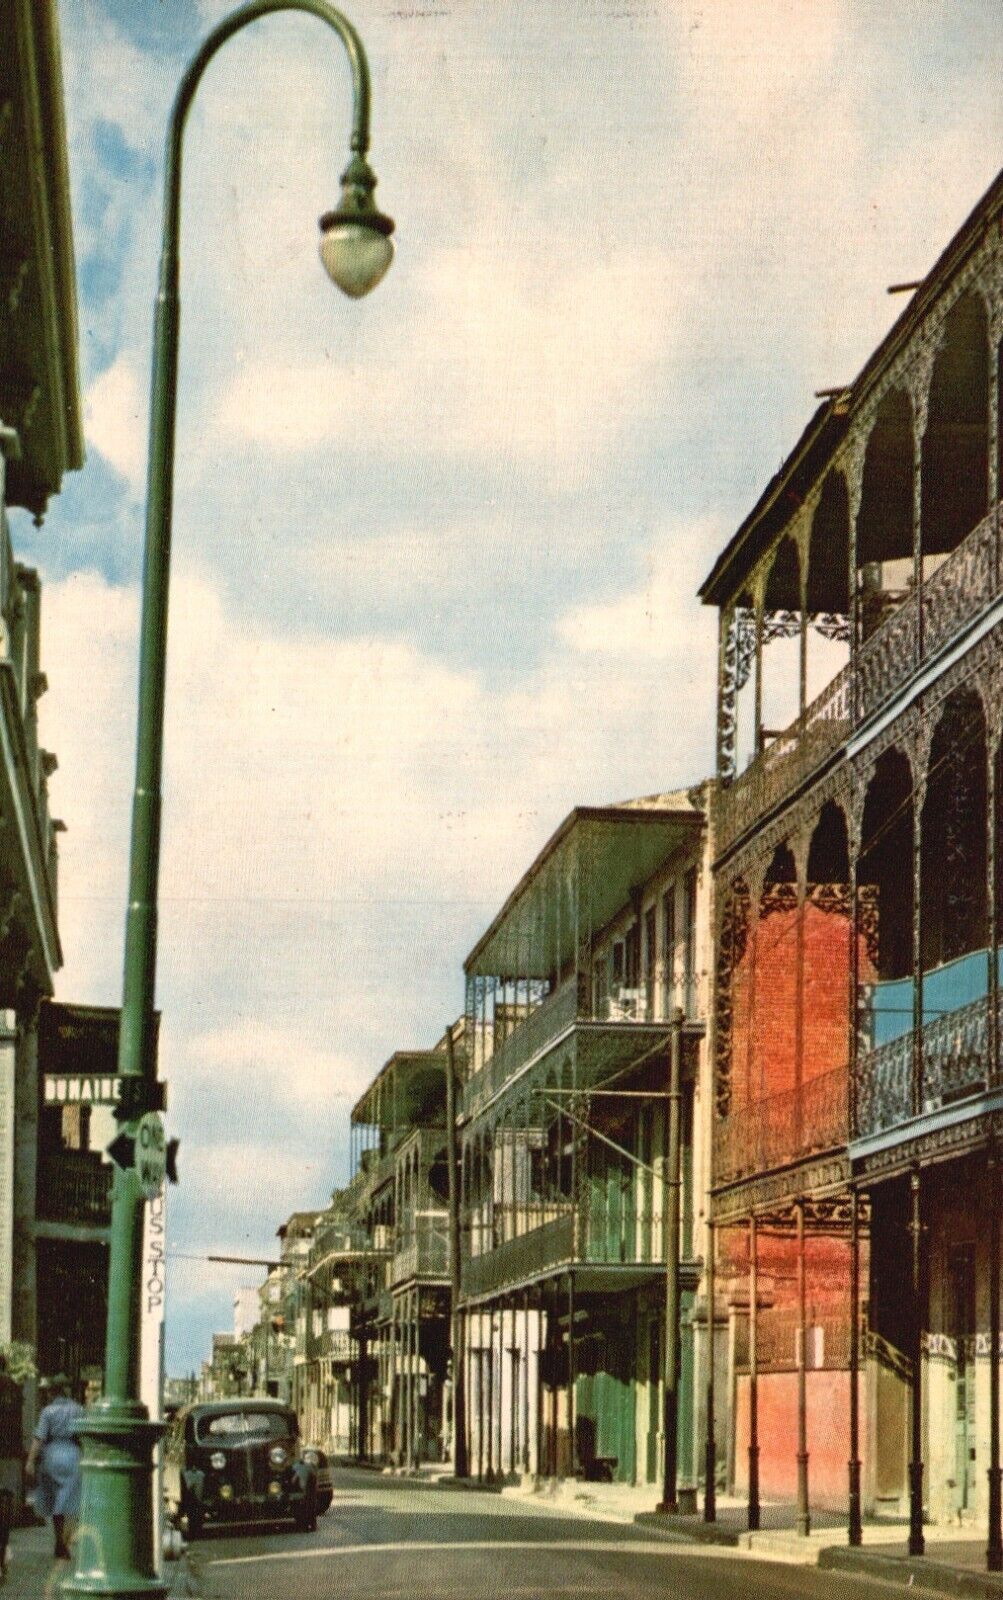 Postcard LA New Orleans Creole Architecture French Quarter 1952 Vintage PC H758